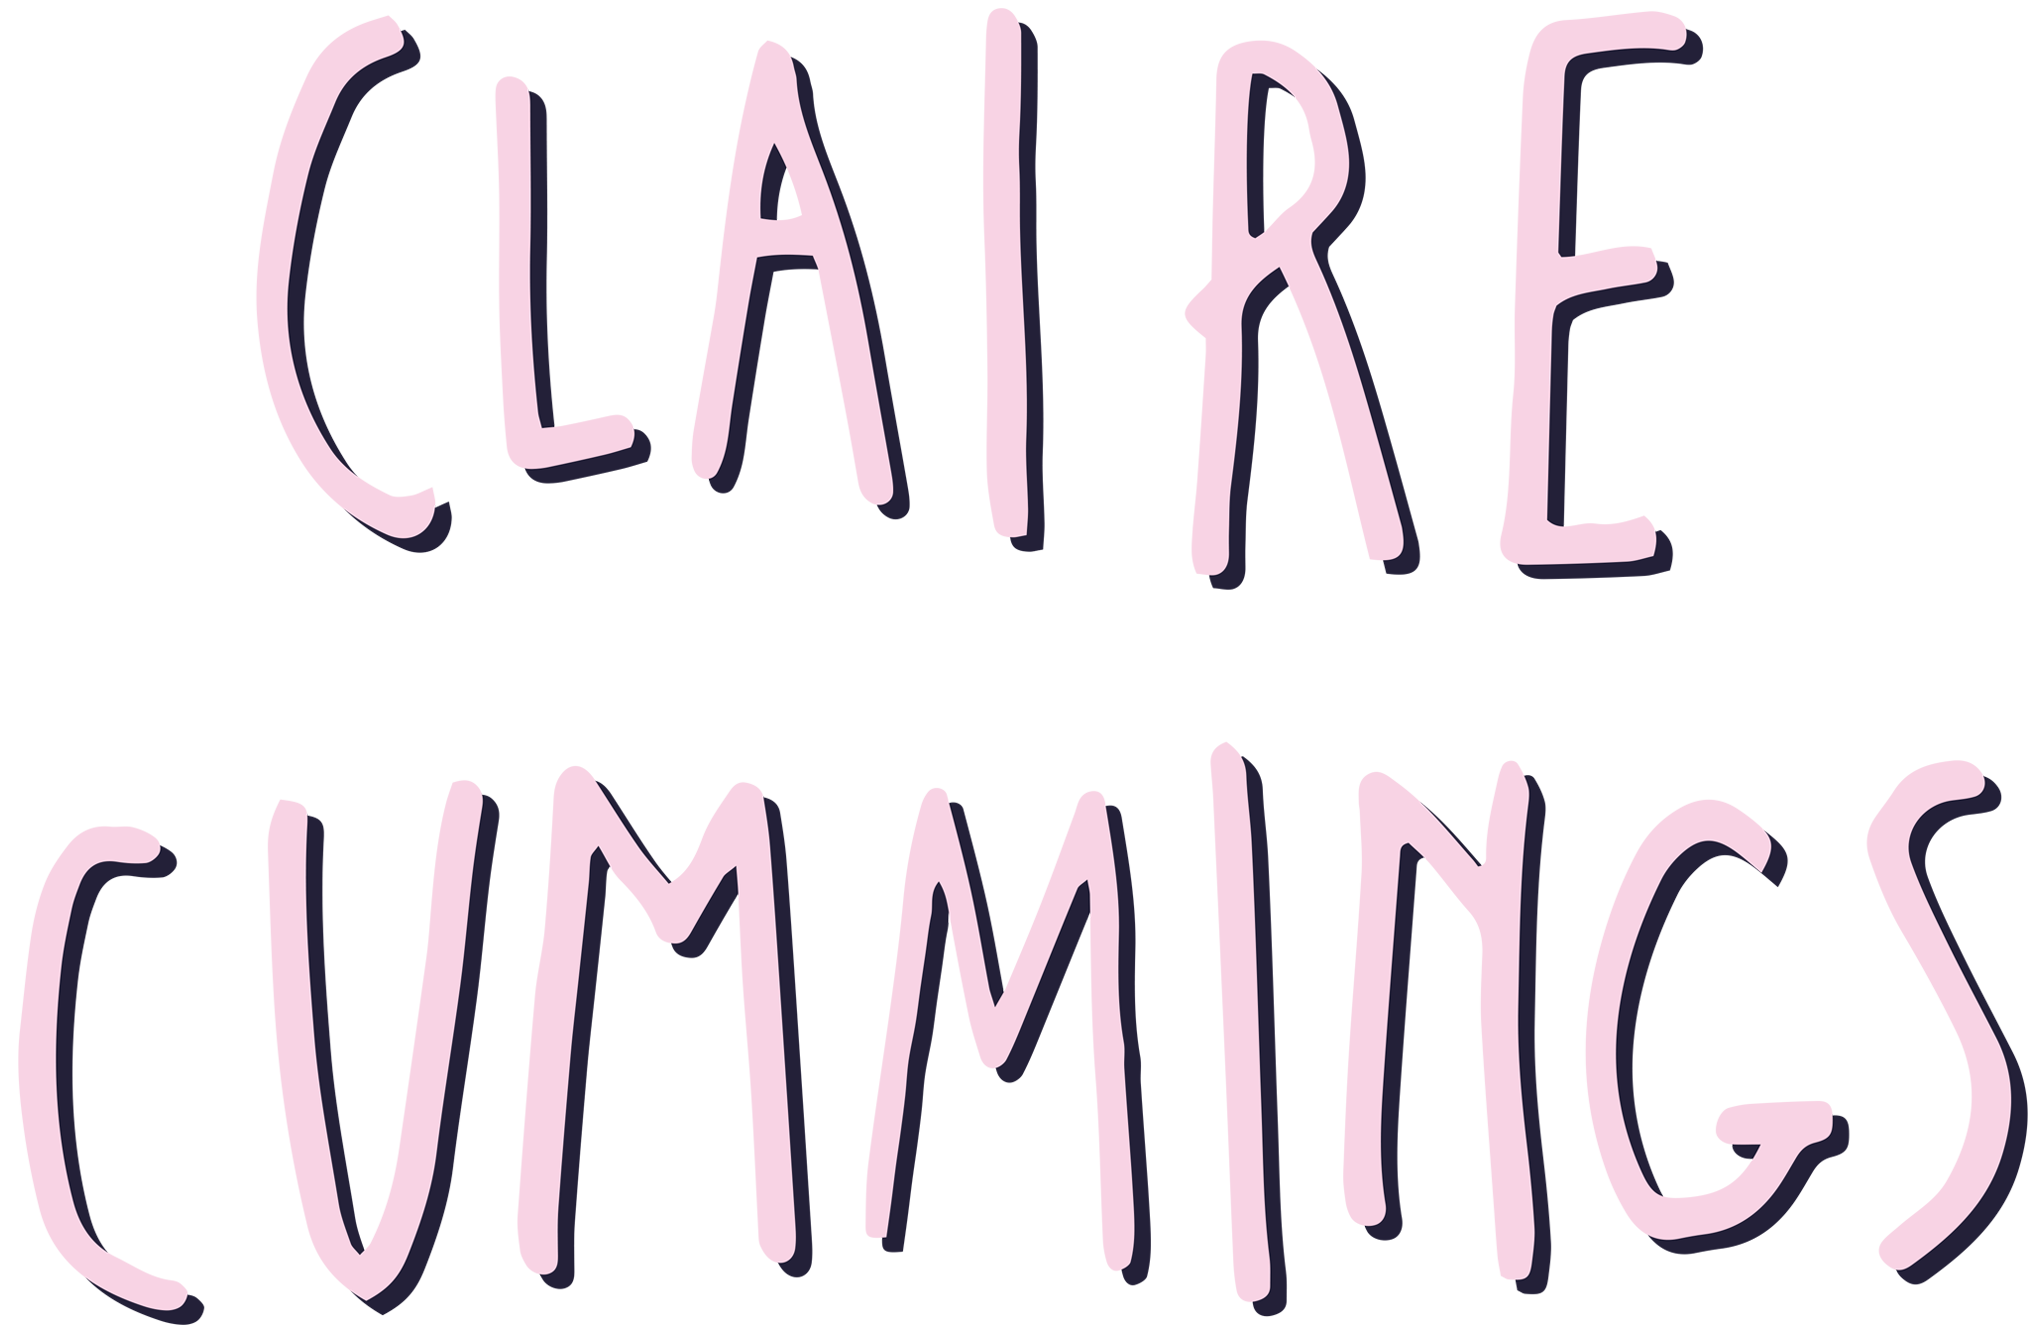 Claire Cummings